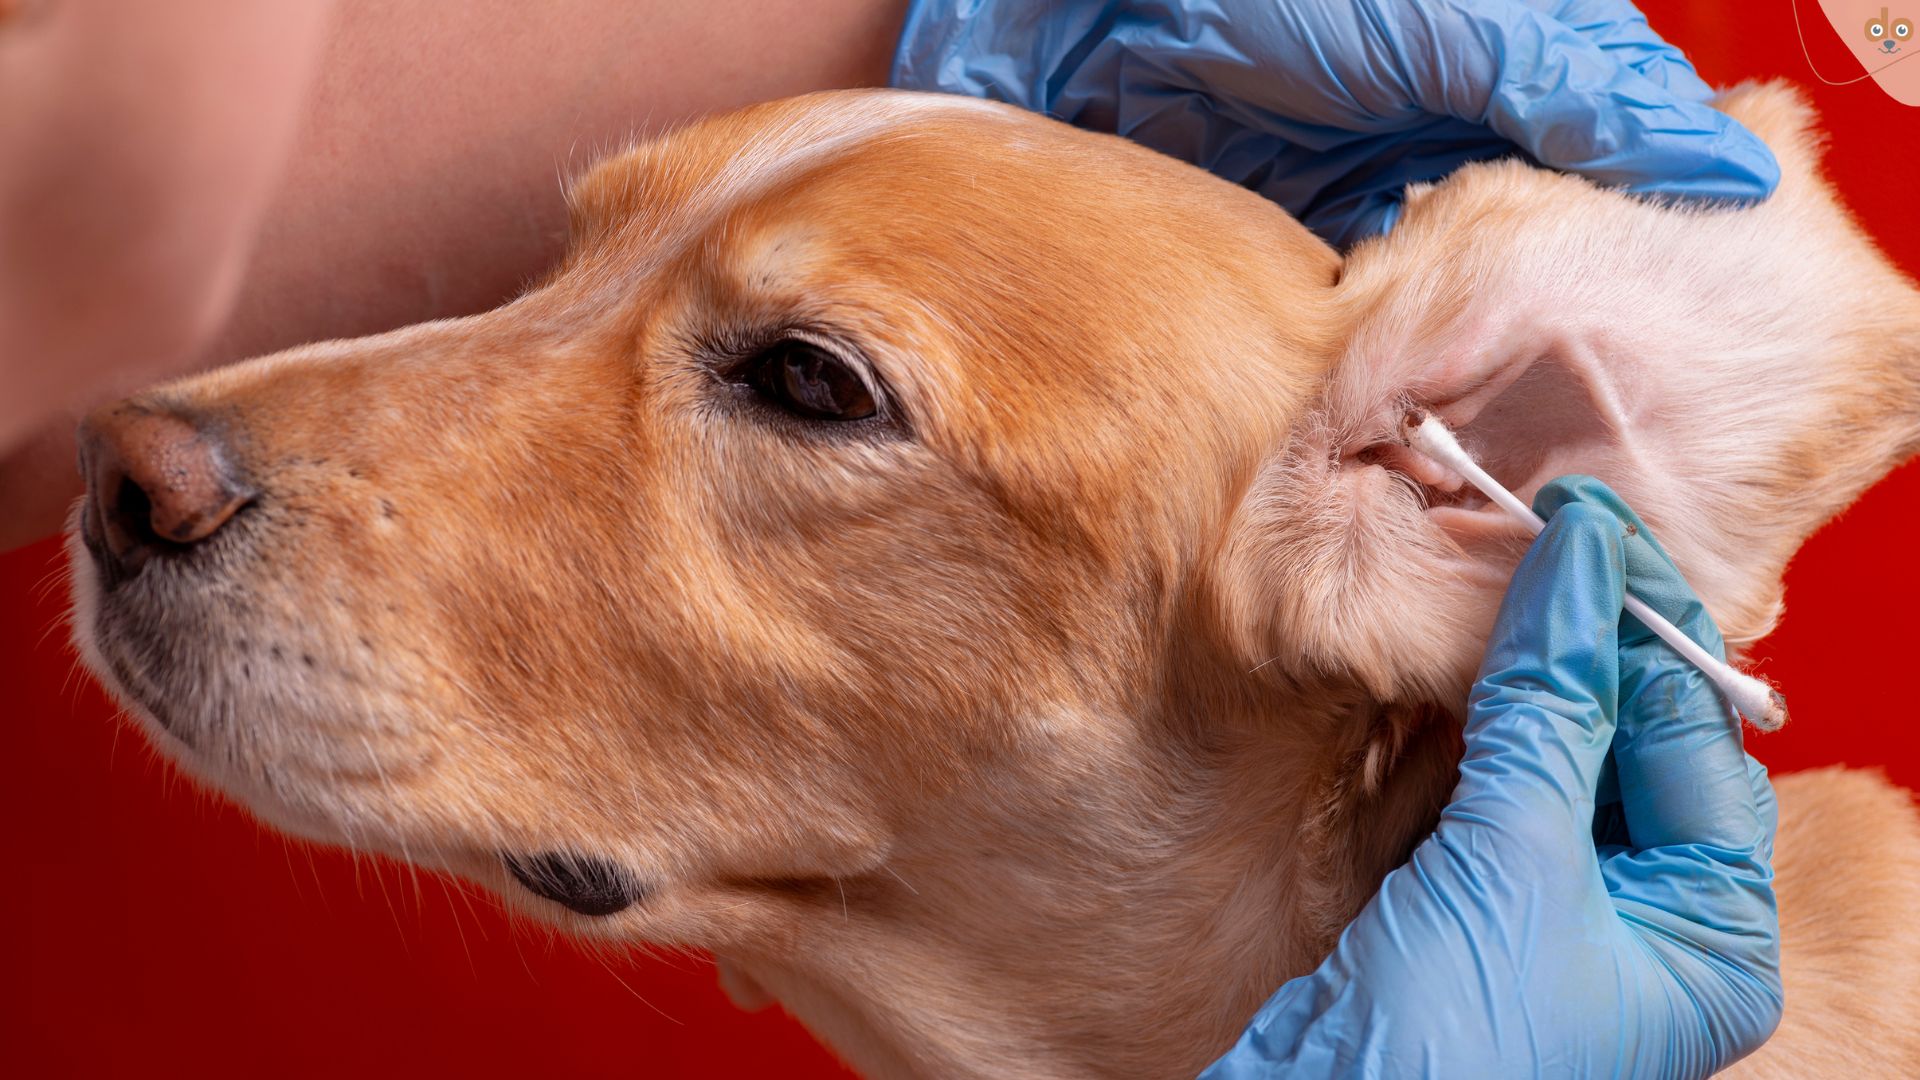 Hände reinigen Hundeohren und entfernen Ohrenschmalz mit Wattestäbchen